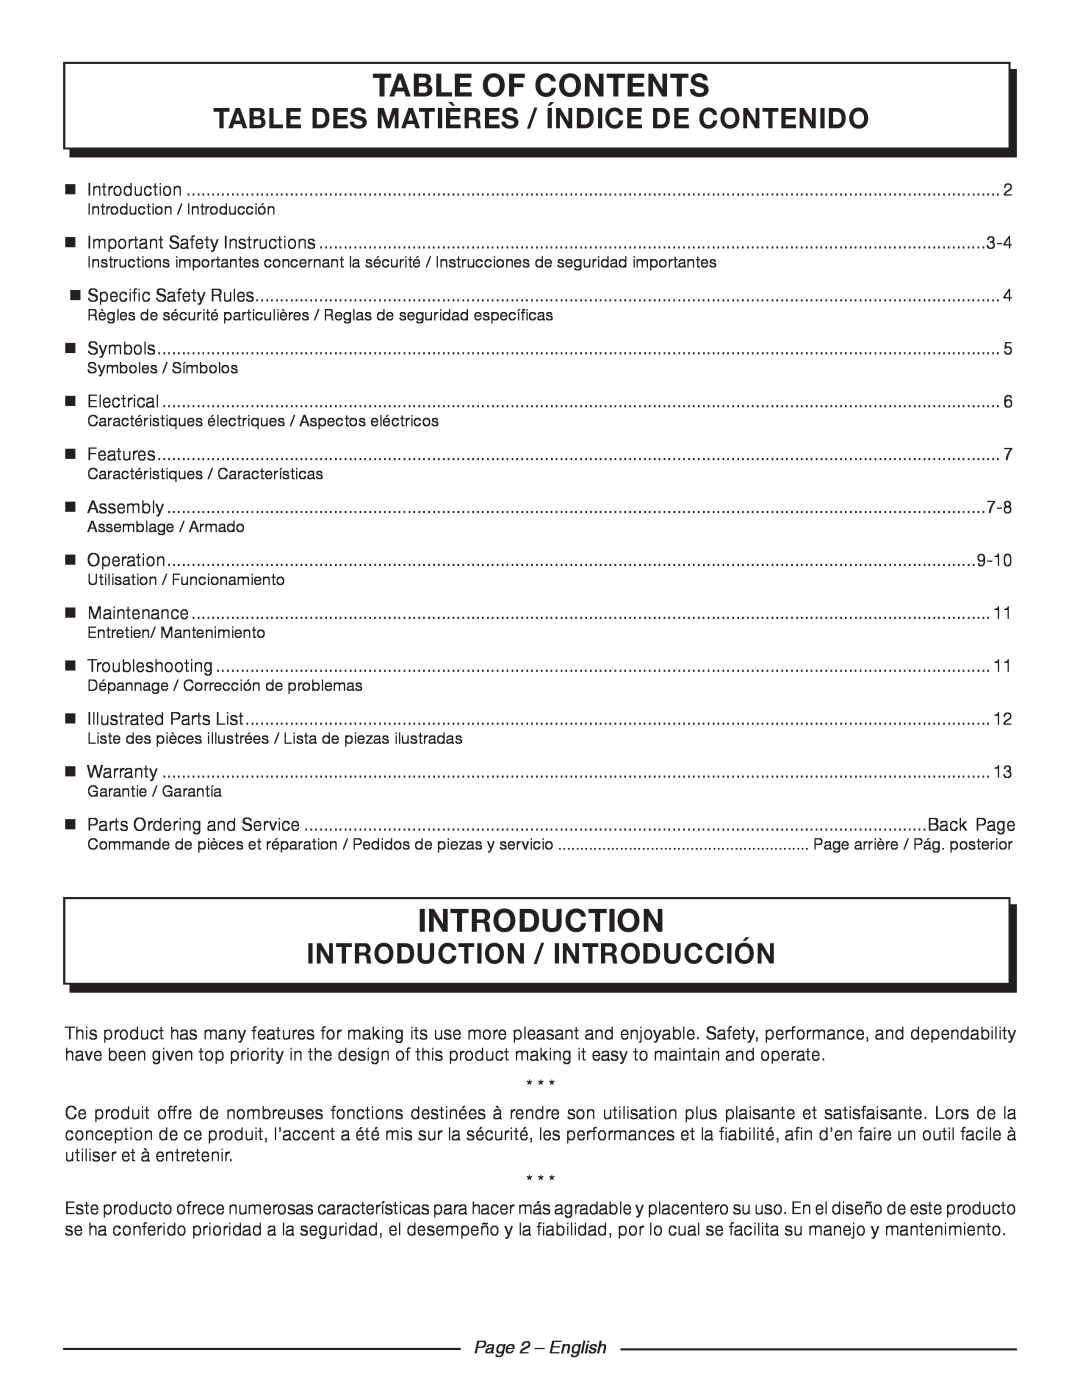 Homelite UT42120 Table Of Contents, introduction, Page 2 - English, Table Des Matières / Índice De Contenido 